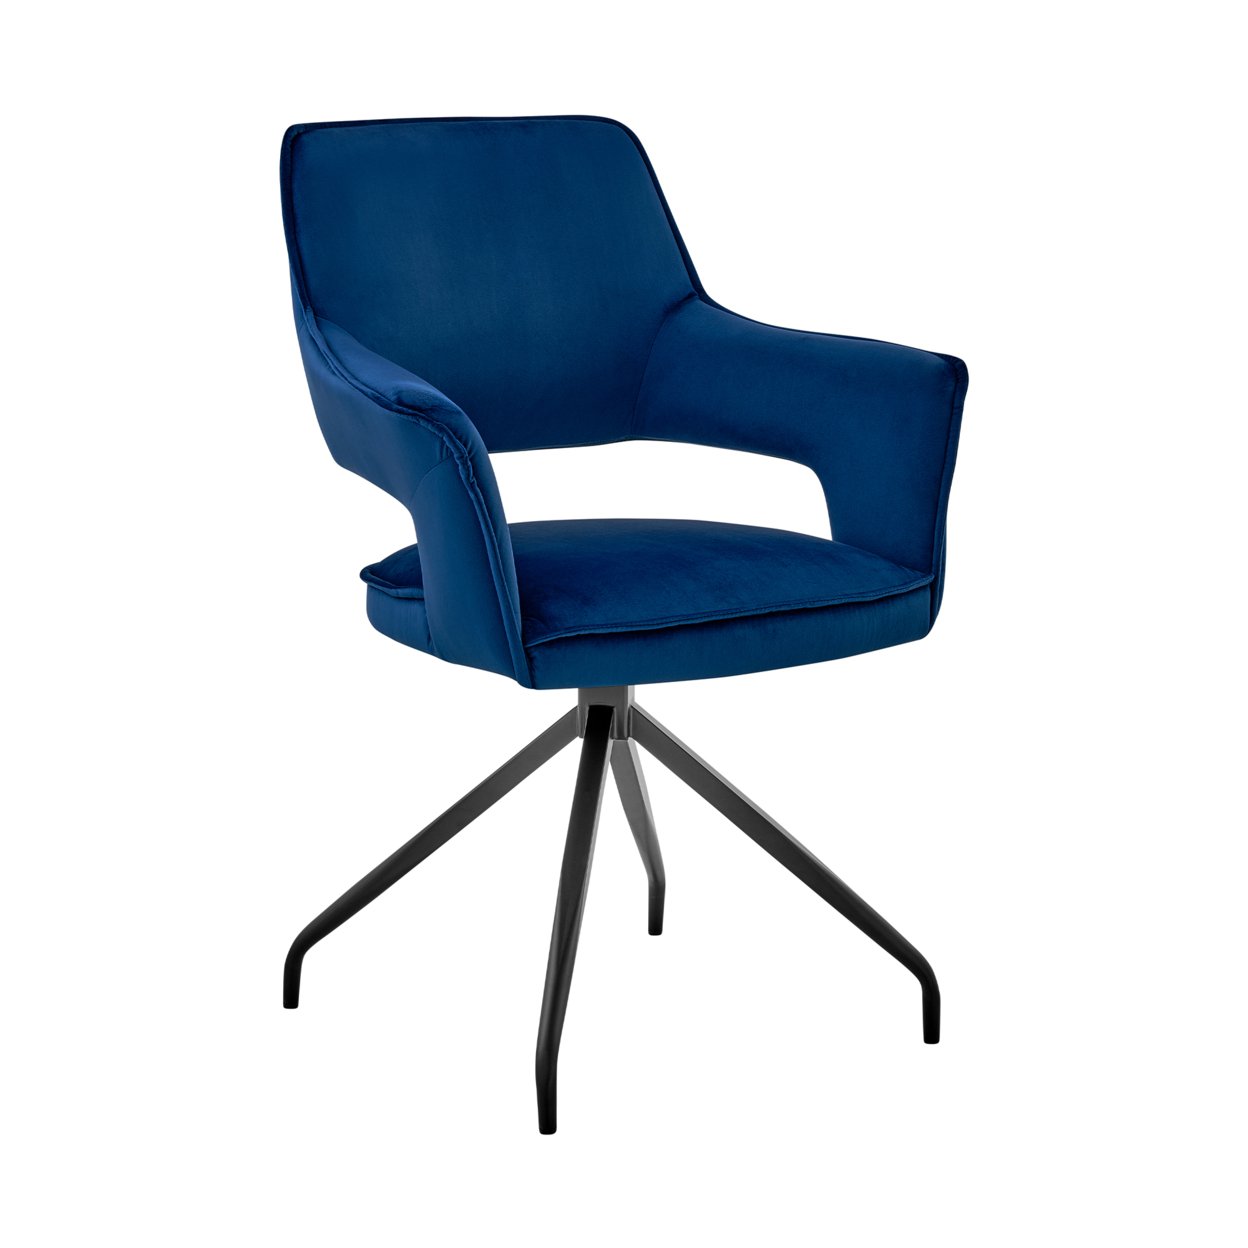 Velvet Upholstered Contemporary Accent Chair, Black And Blue- Saltoro Sherpi